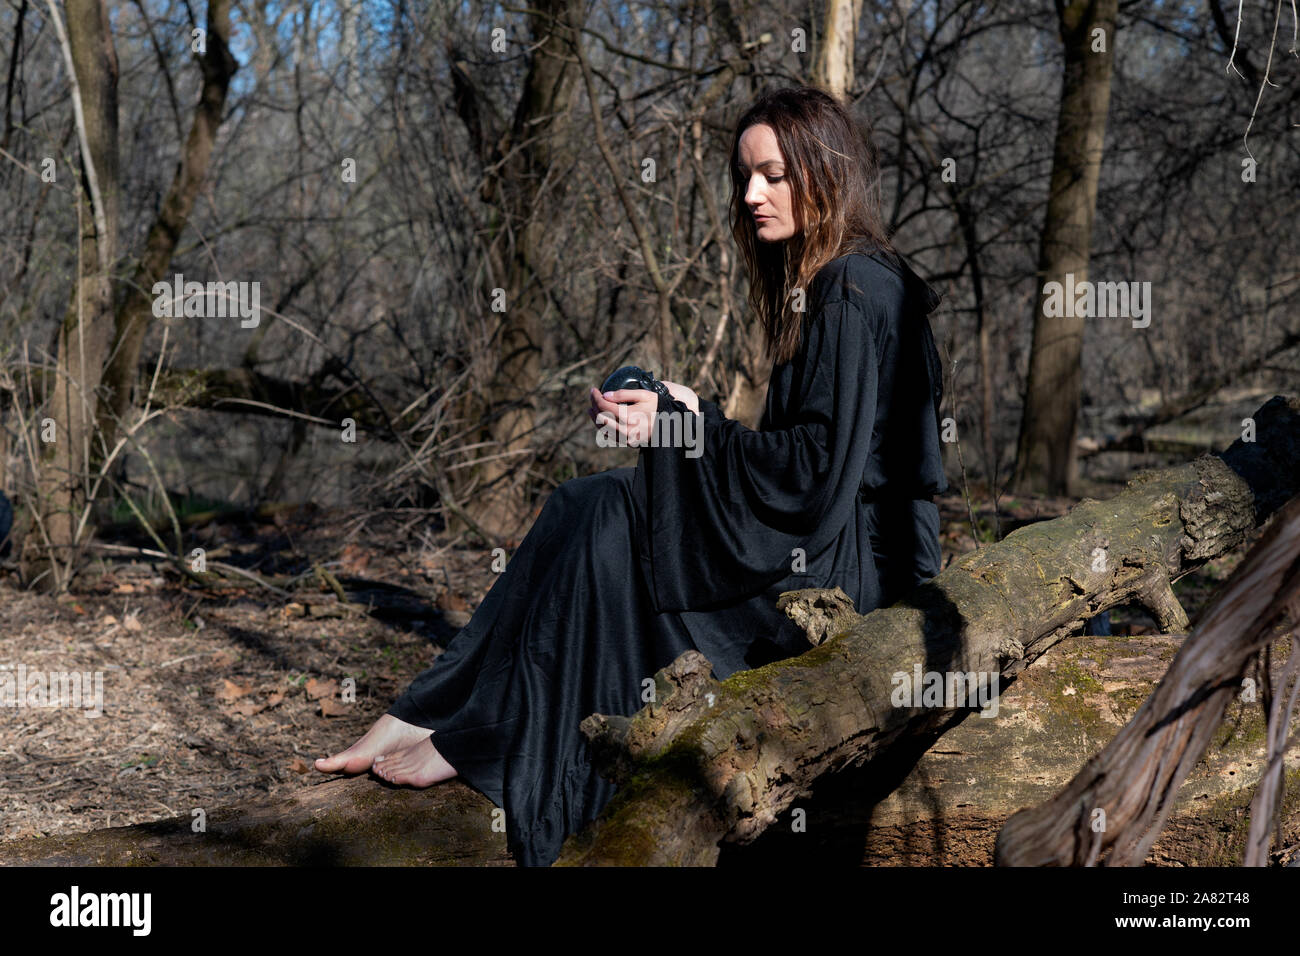 Frau mit dunklen langen Haaren in schwarzen Roben sitzen auf einem Baum im Wald. Zurück zur Natur Konzept. Zauberei und Magie. Stockfoto